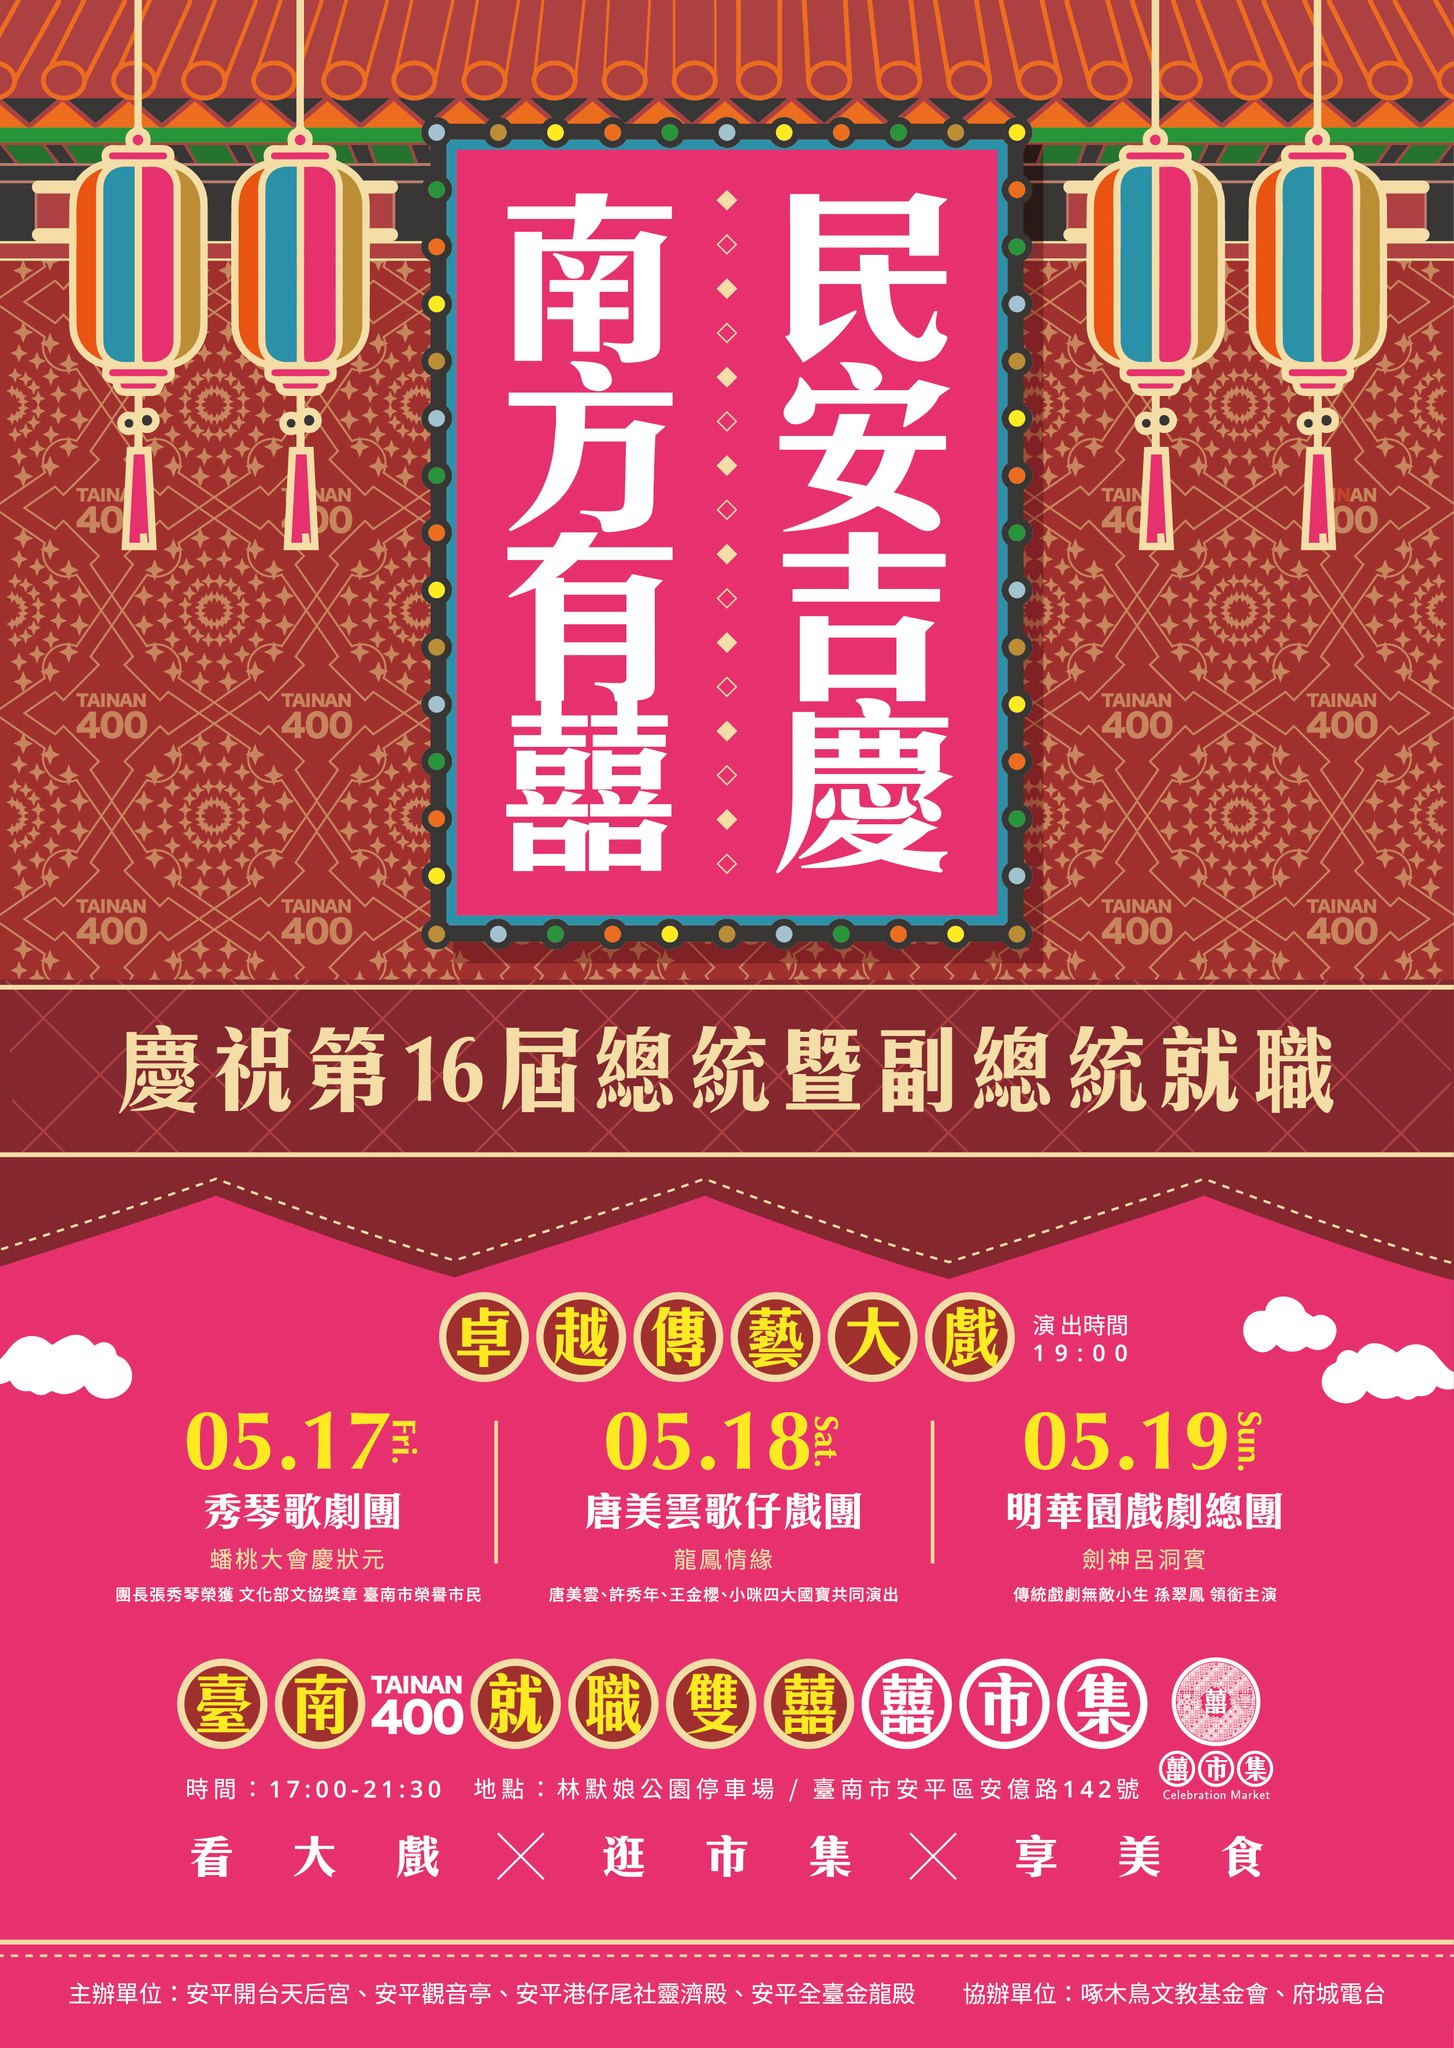 國宴等級「囍市集」聚集22家台南知名小吃 黃偉哲歡迎民眾賞傳統戲、吃美食　感受台南獨有魅力